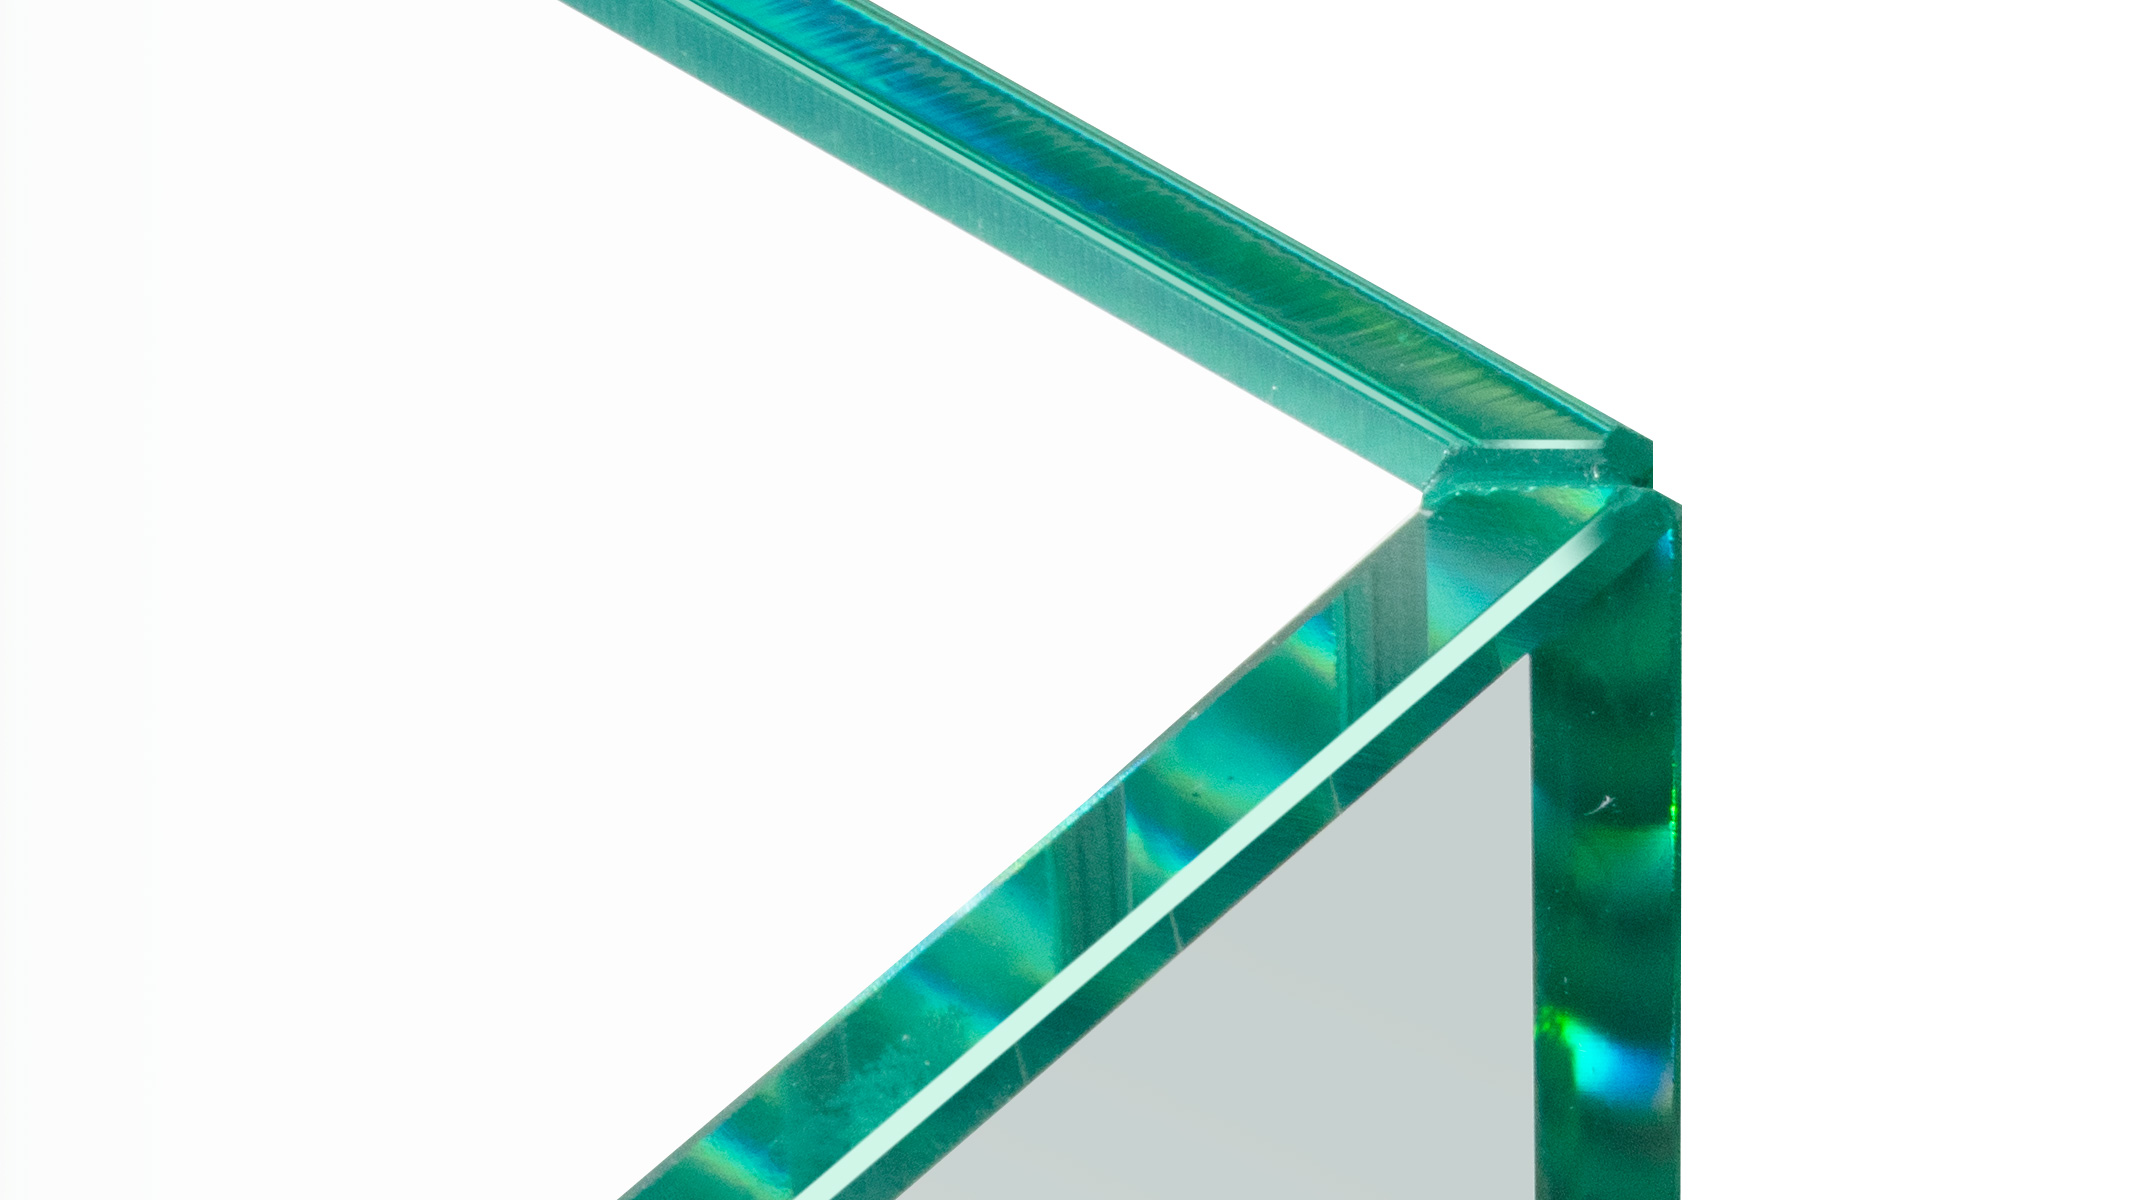 ESG Floatglas in U-Form, Höhe 30 cm, Stärke 6 mm, Kanten auf Gehrung UV verklebt, Kanten poliert,
Sonderausstattung für Ergolift Evolution 140 cm